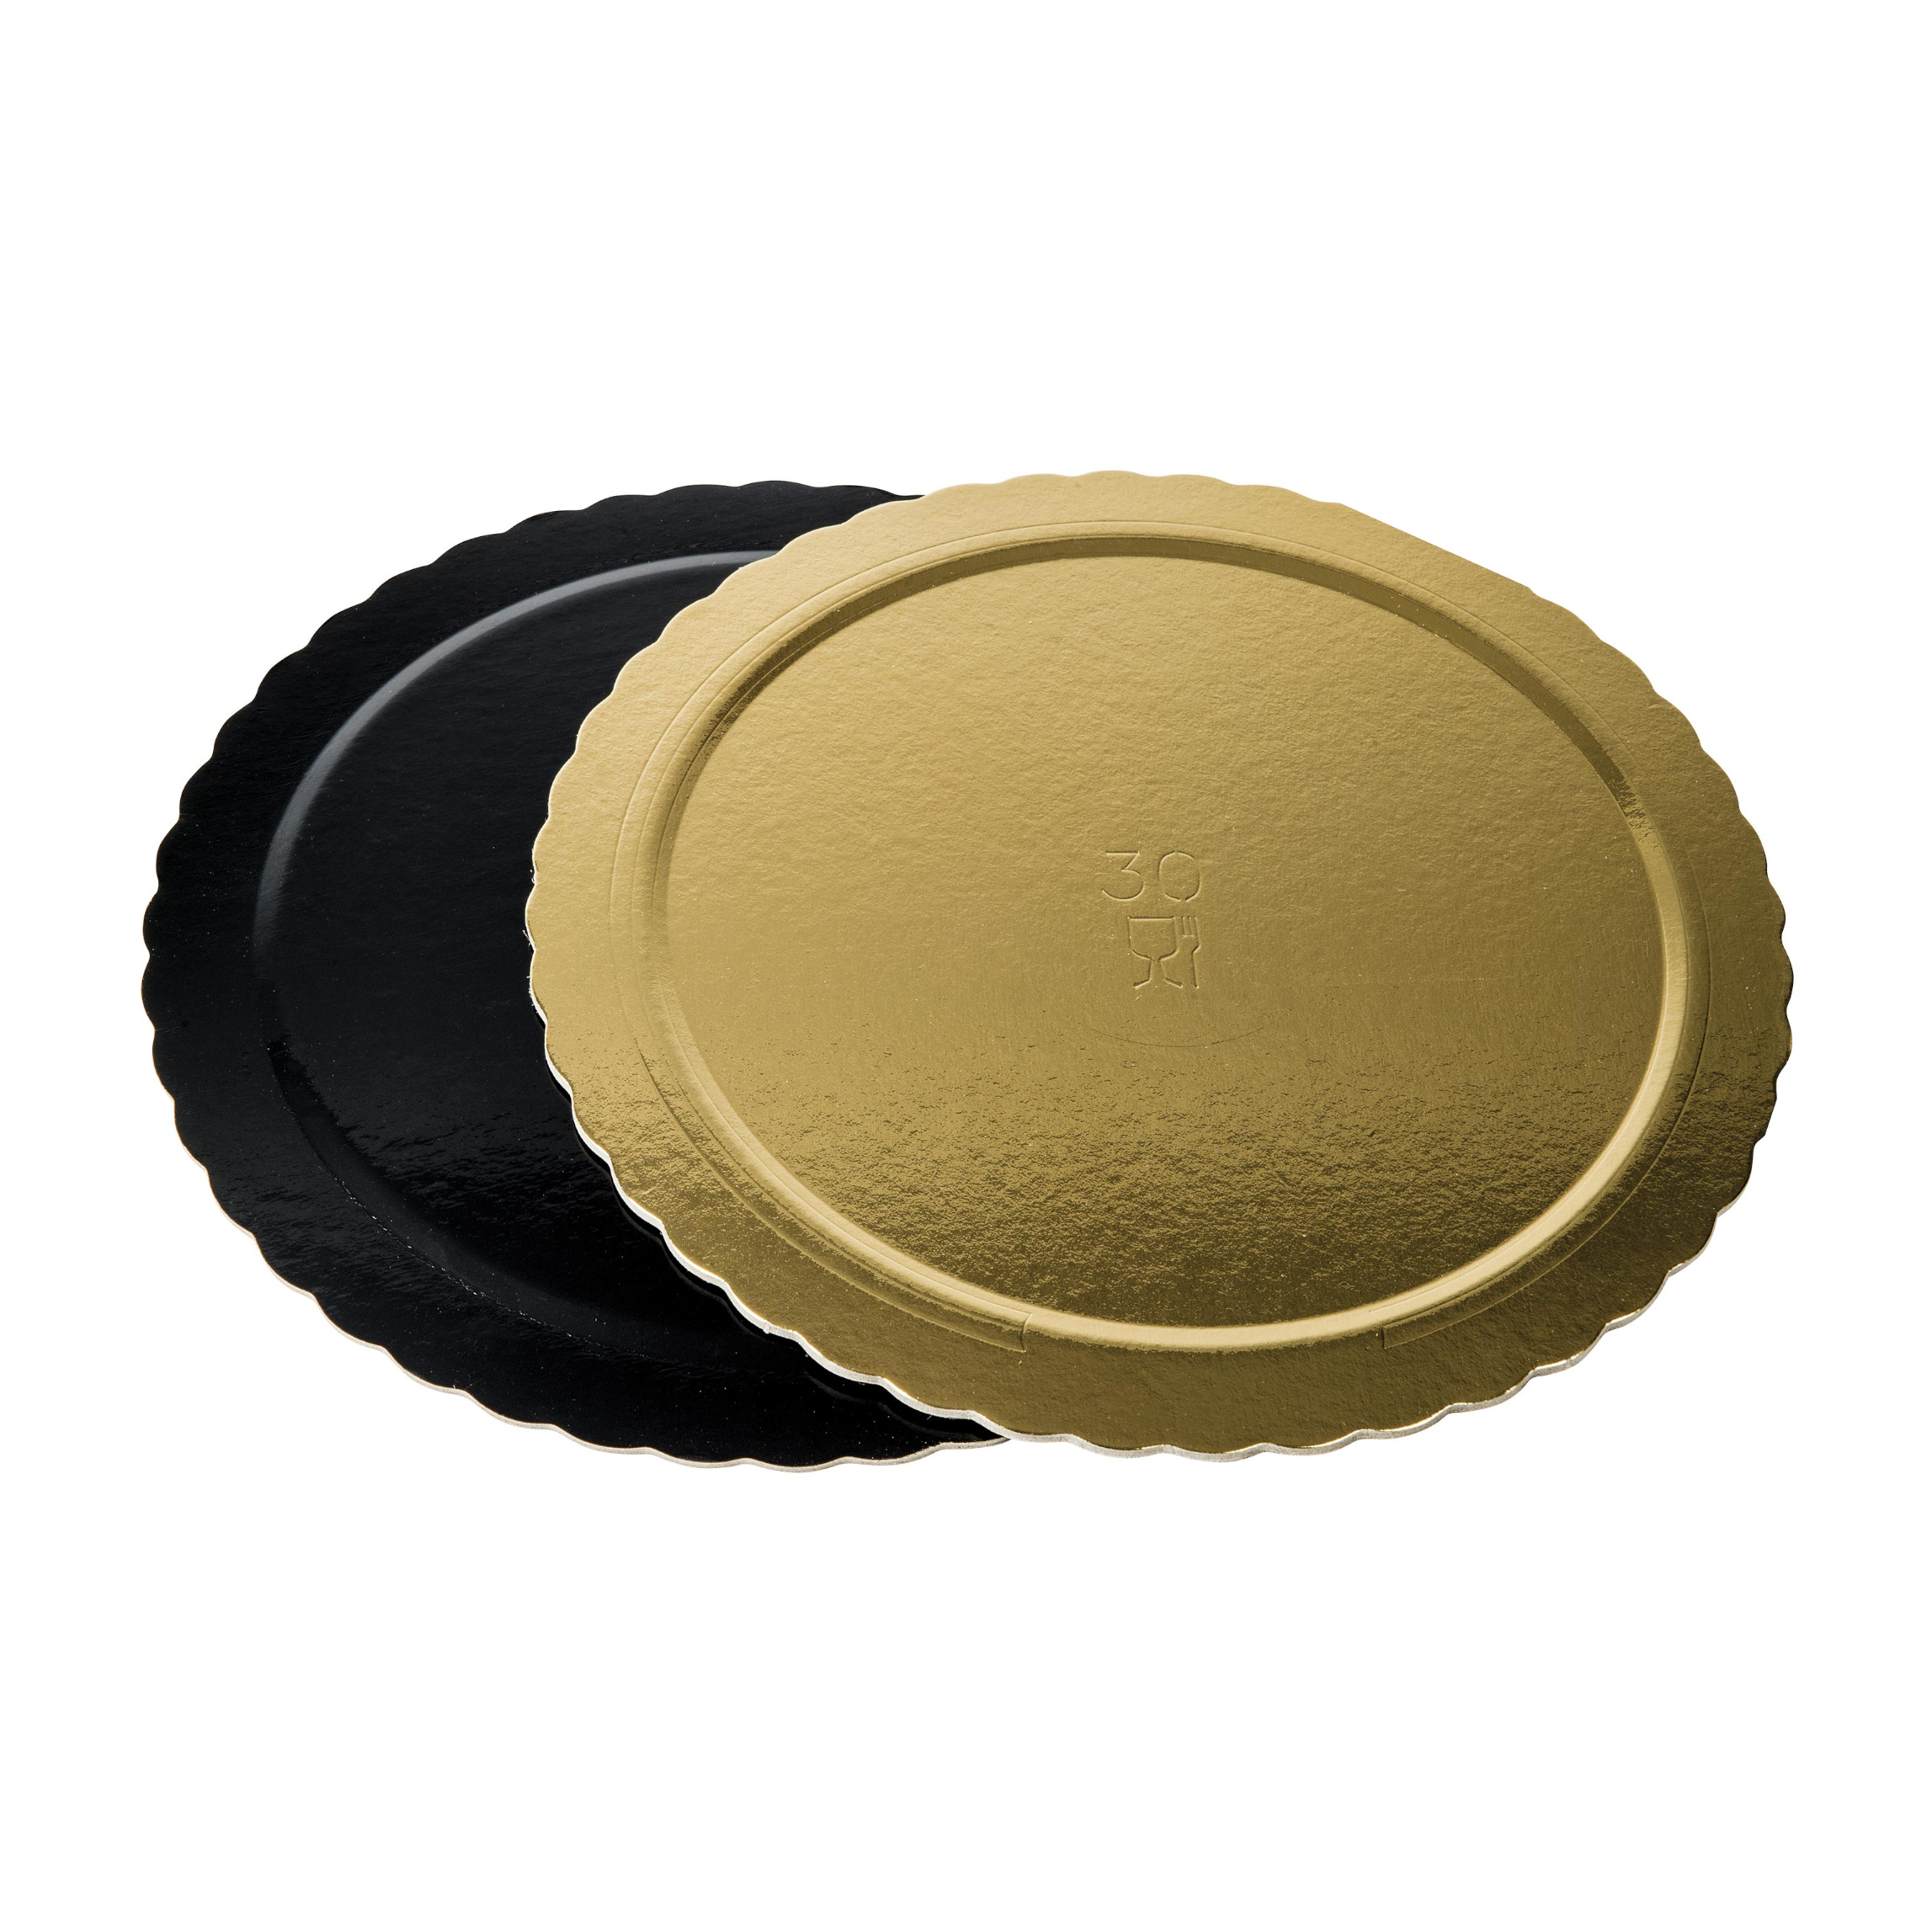 Dischi sottotorta kappati oro/nero 24cm pacchetto da 10kg